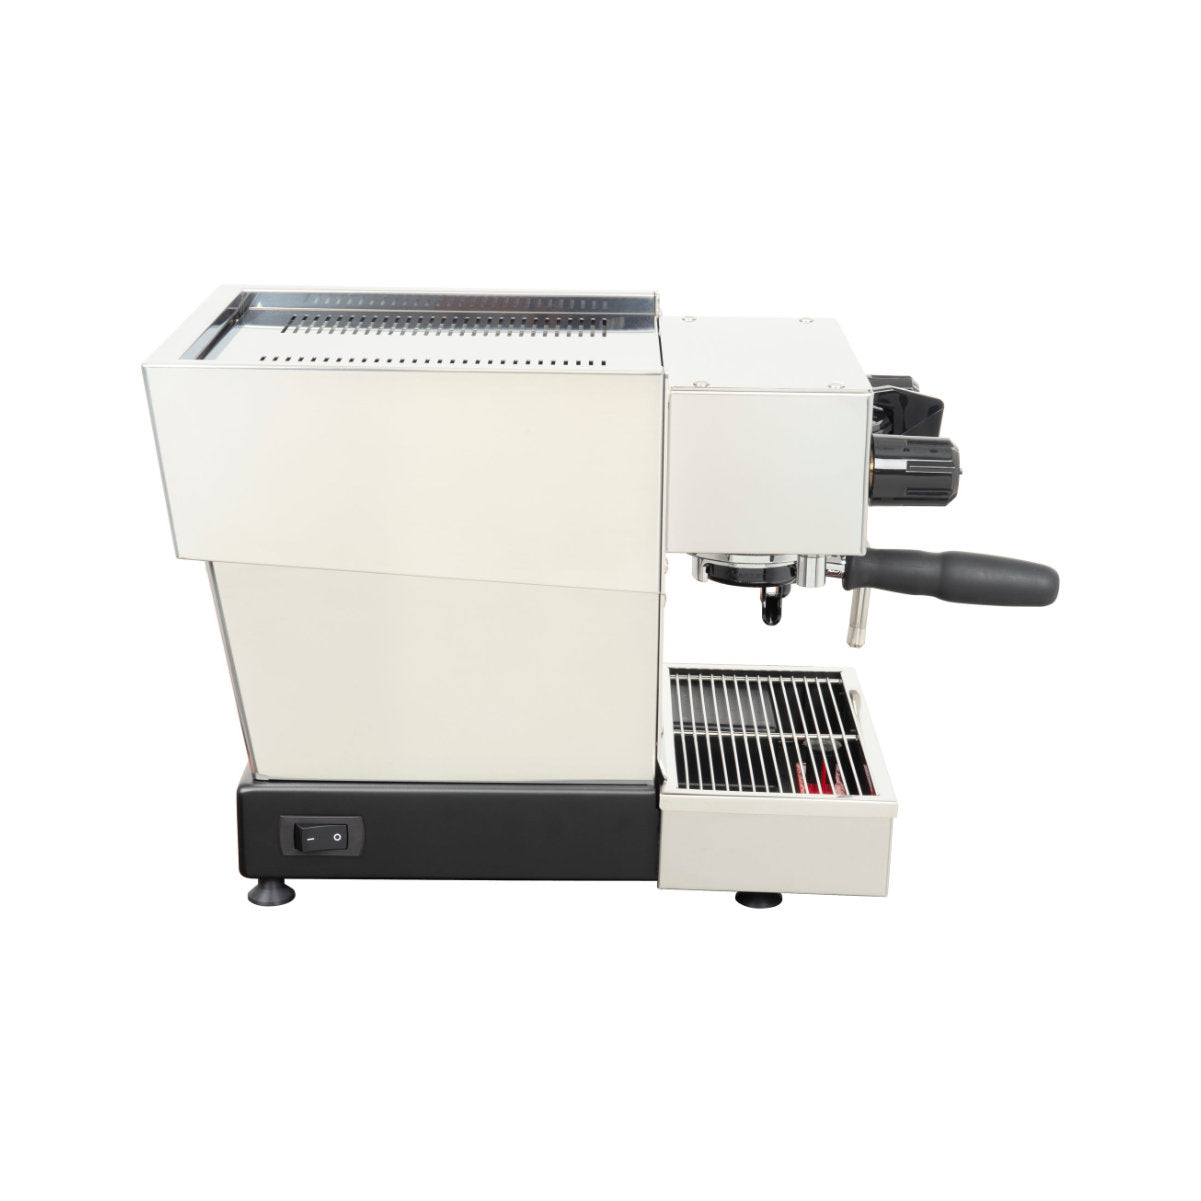 La Marzocco Linea Micra Dual Boiler Espresso Machine (Stainless Steel)